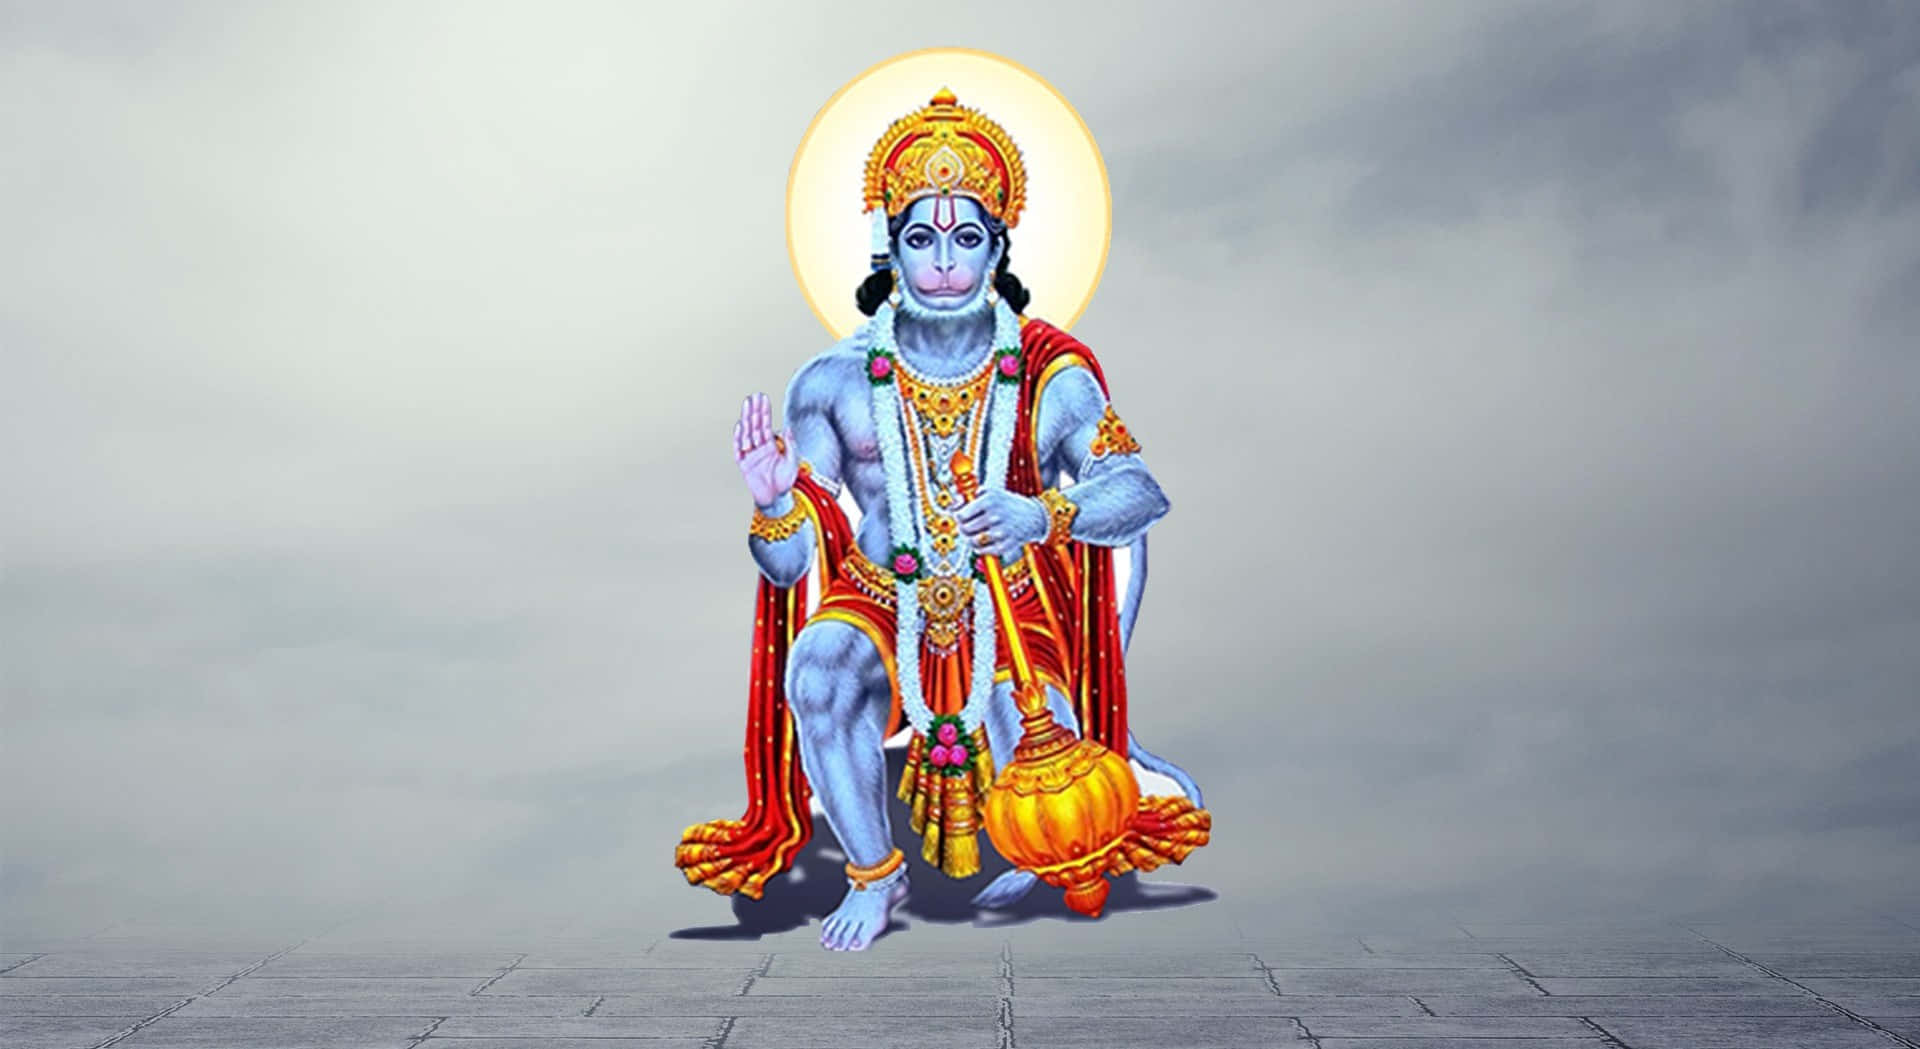 Imagende Hanuman Con Piel Azul.